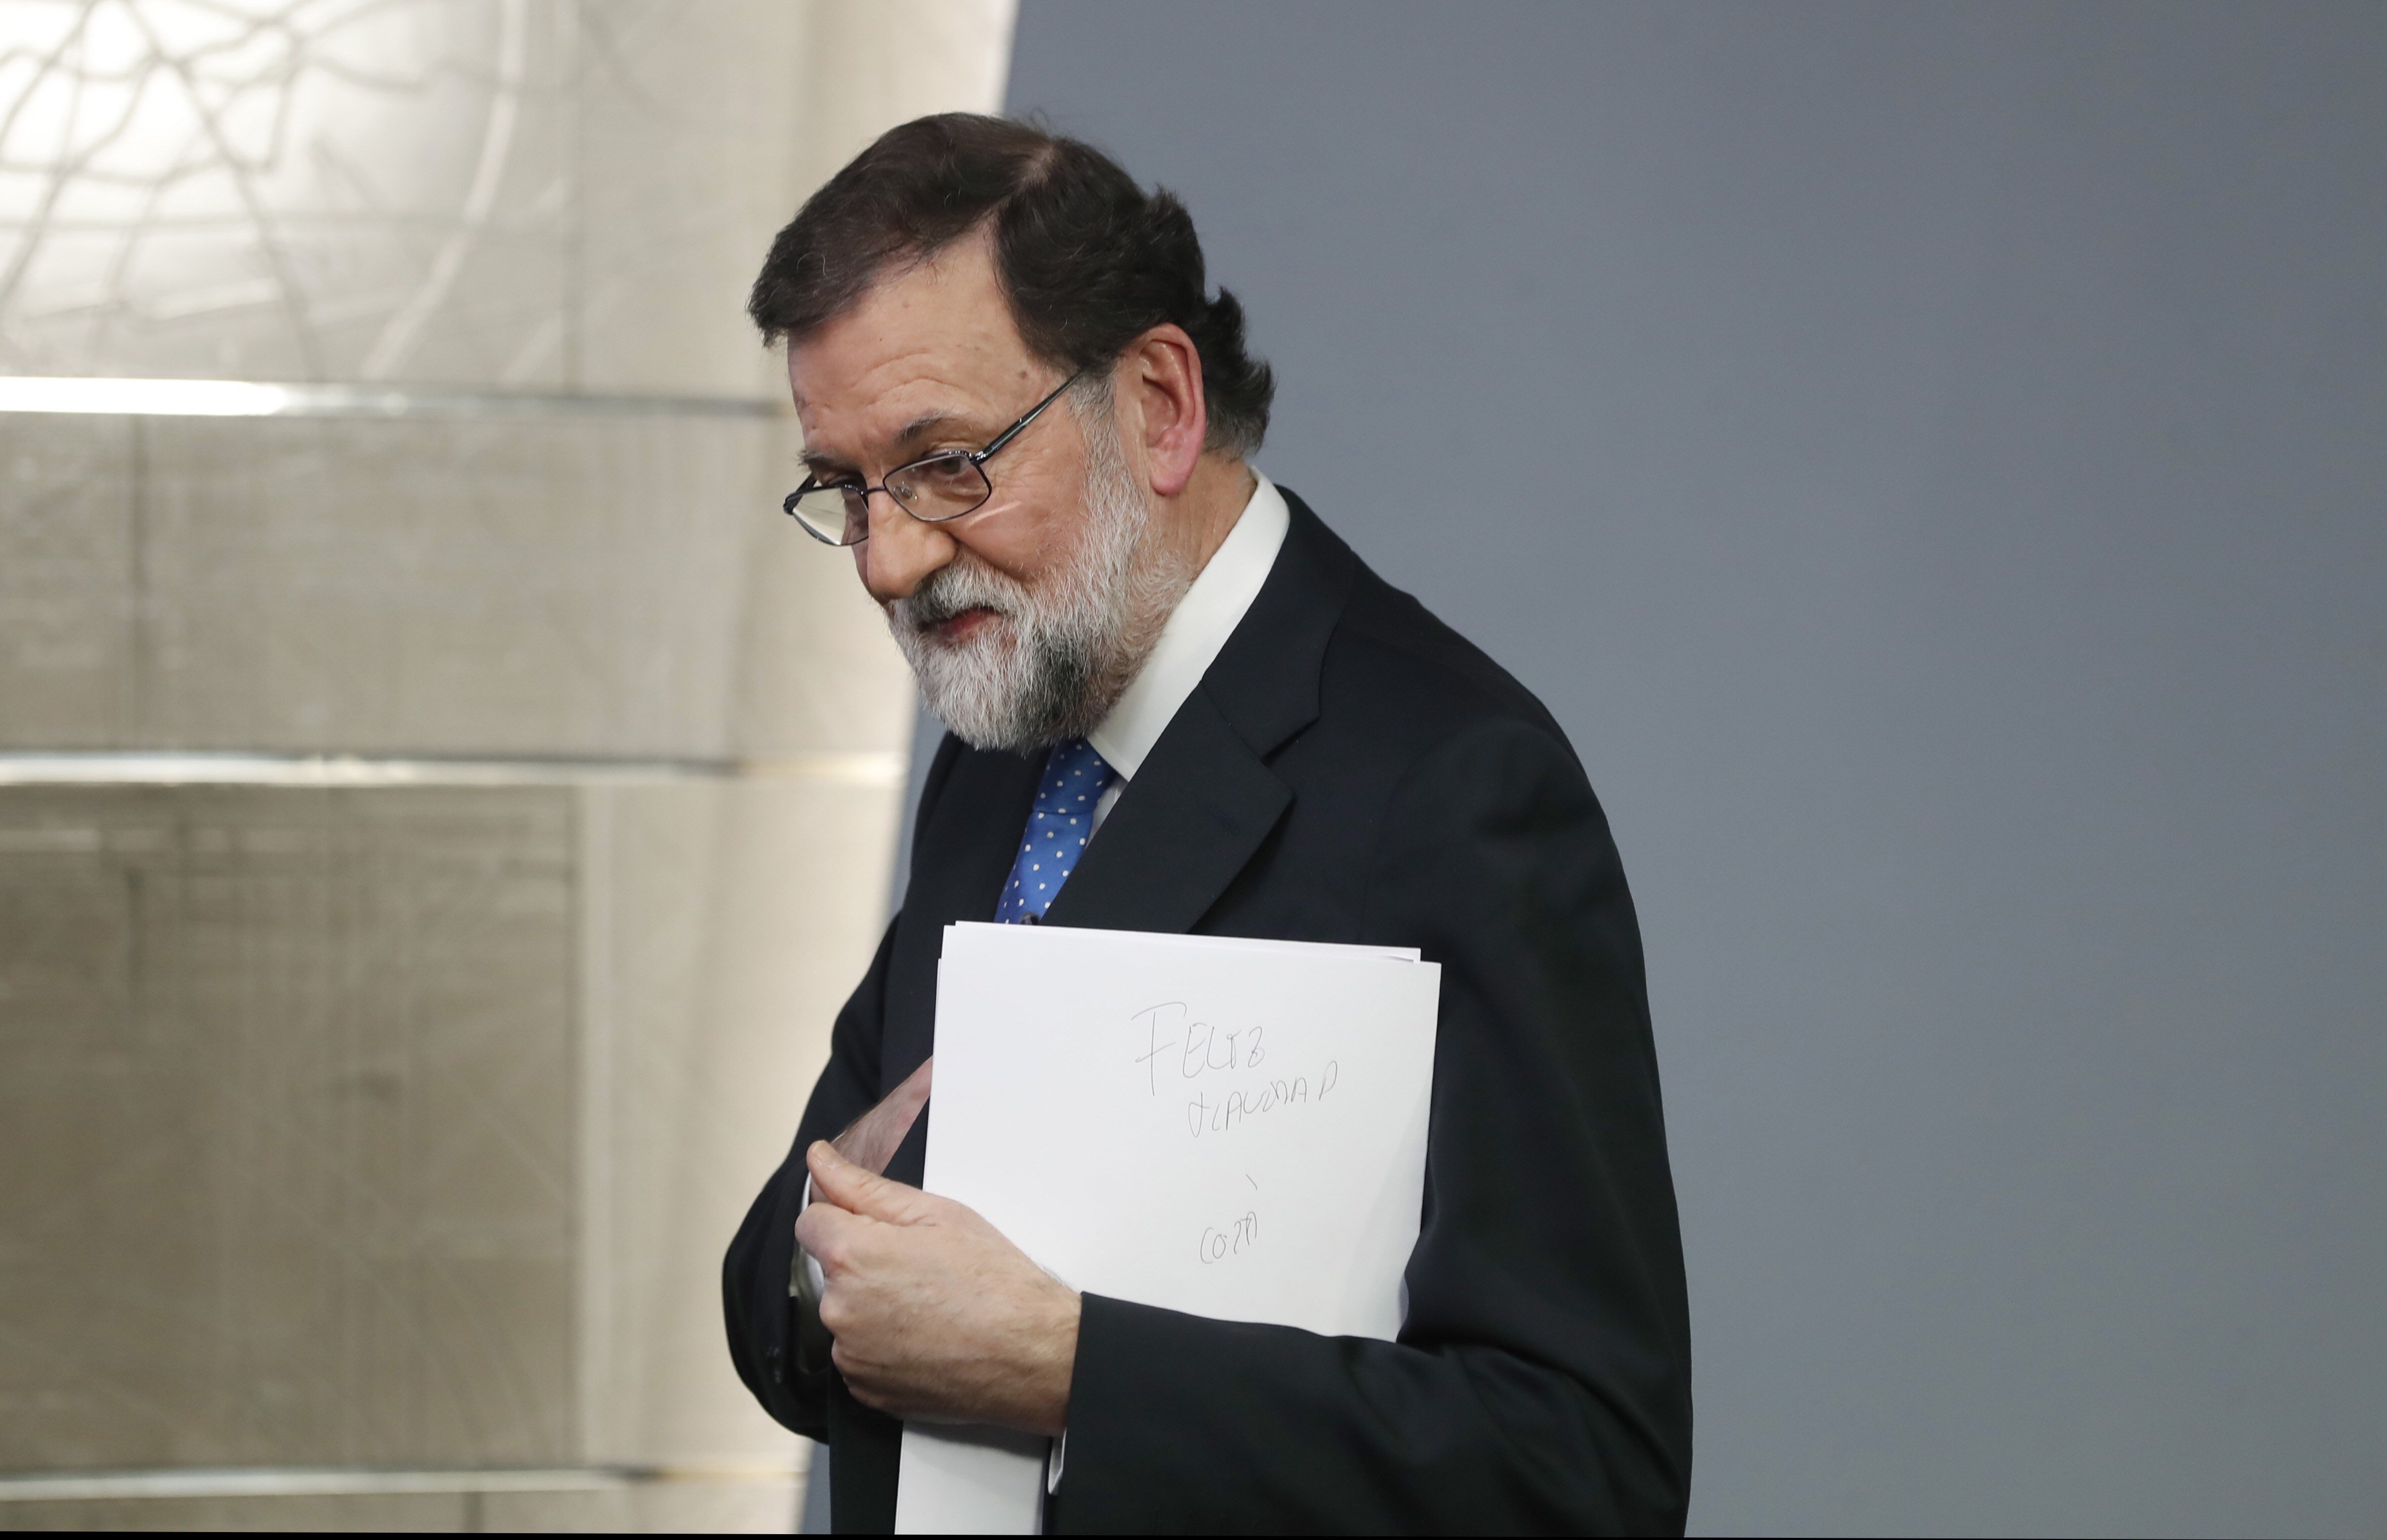 La patacada a Catalunya embolica la legislatura a Rajoy